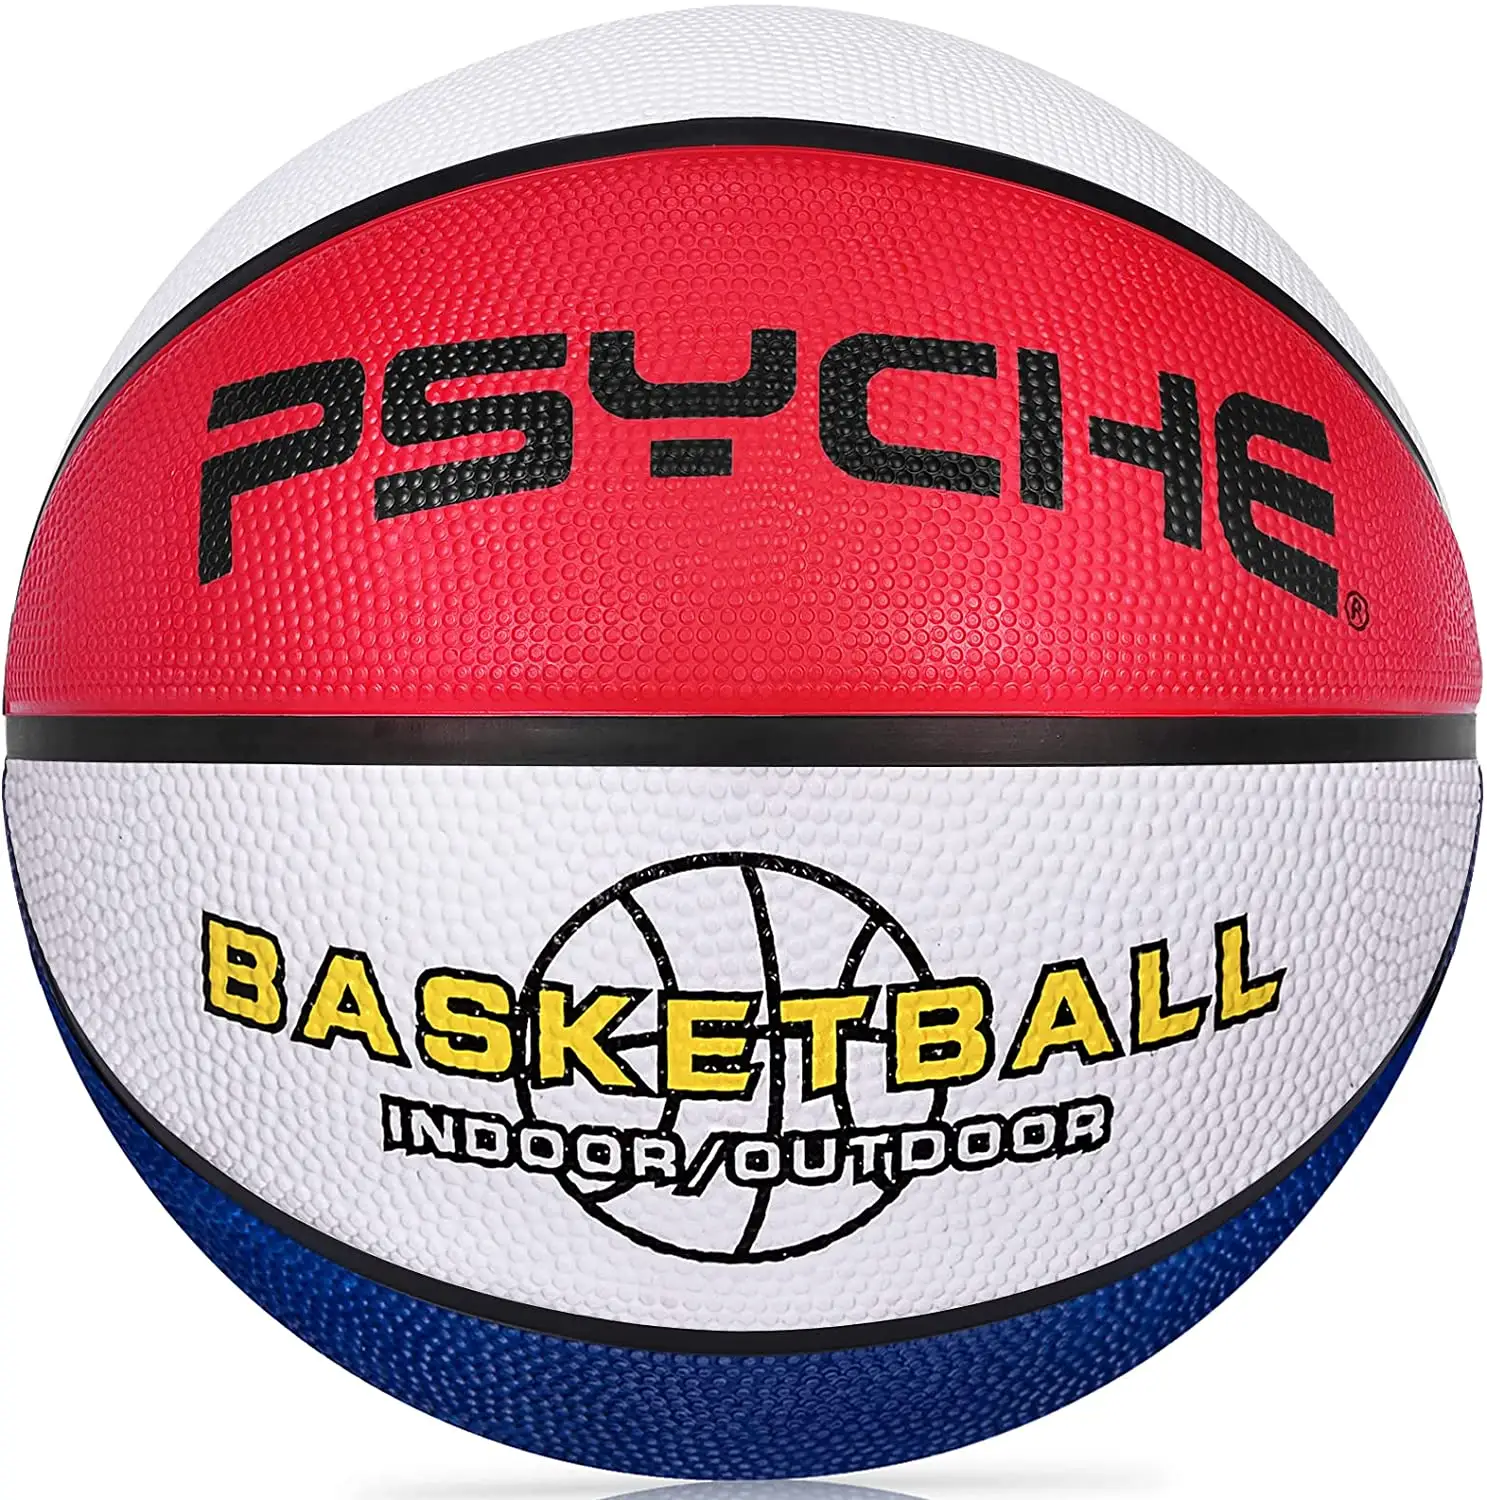 कस्टम थोक आकार 5 आकार 7 बास्केटबॉल Baloncesto बास्केटबॉल गेंद की कीमतों रंगीन गेंदों के लिए बच्चों के युवा